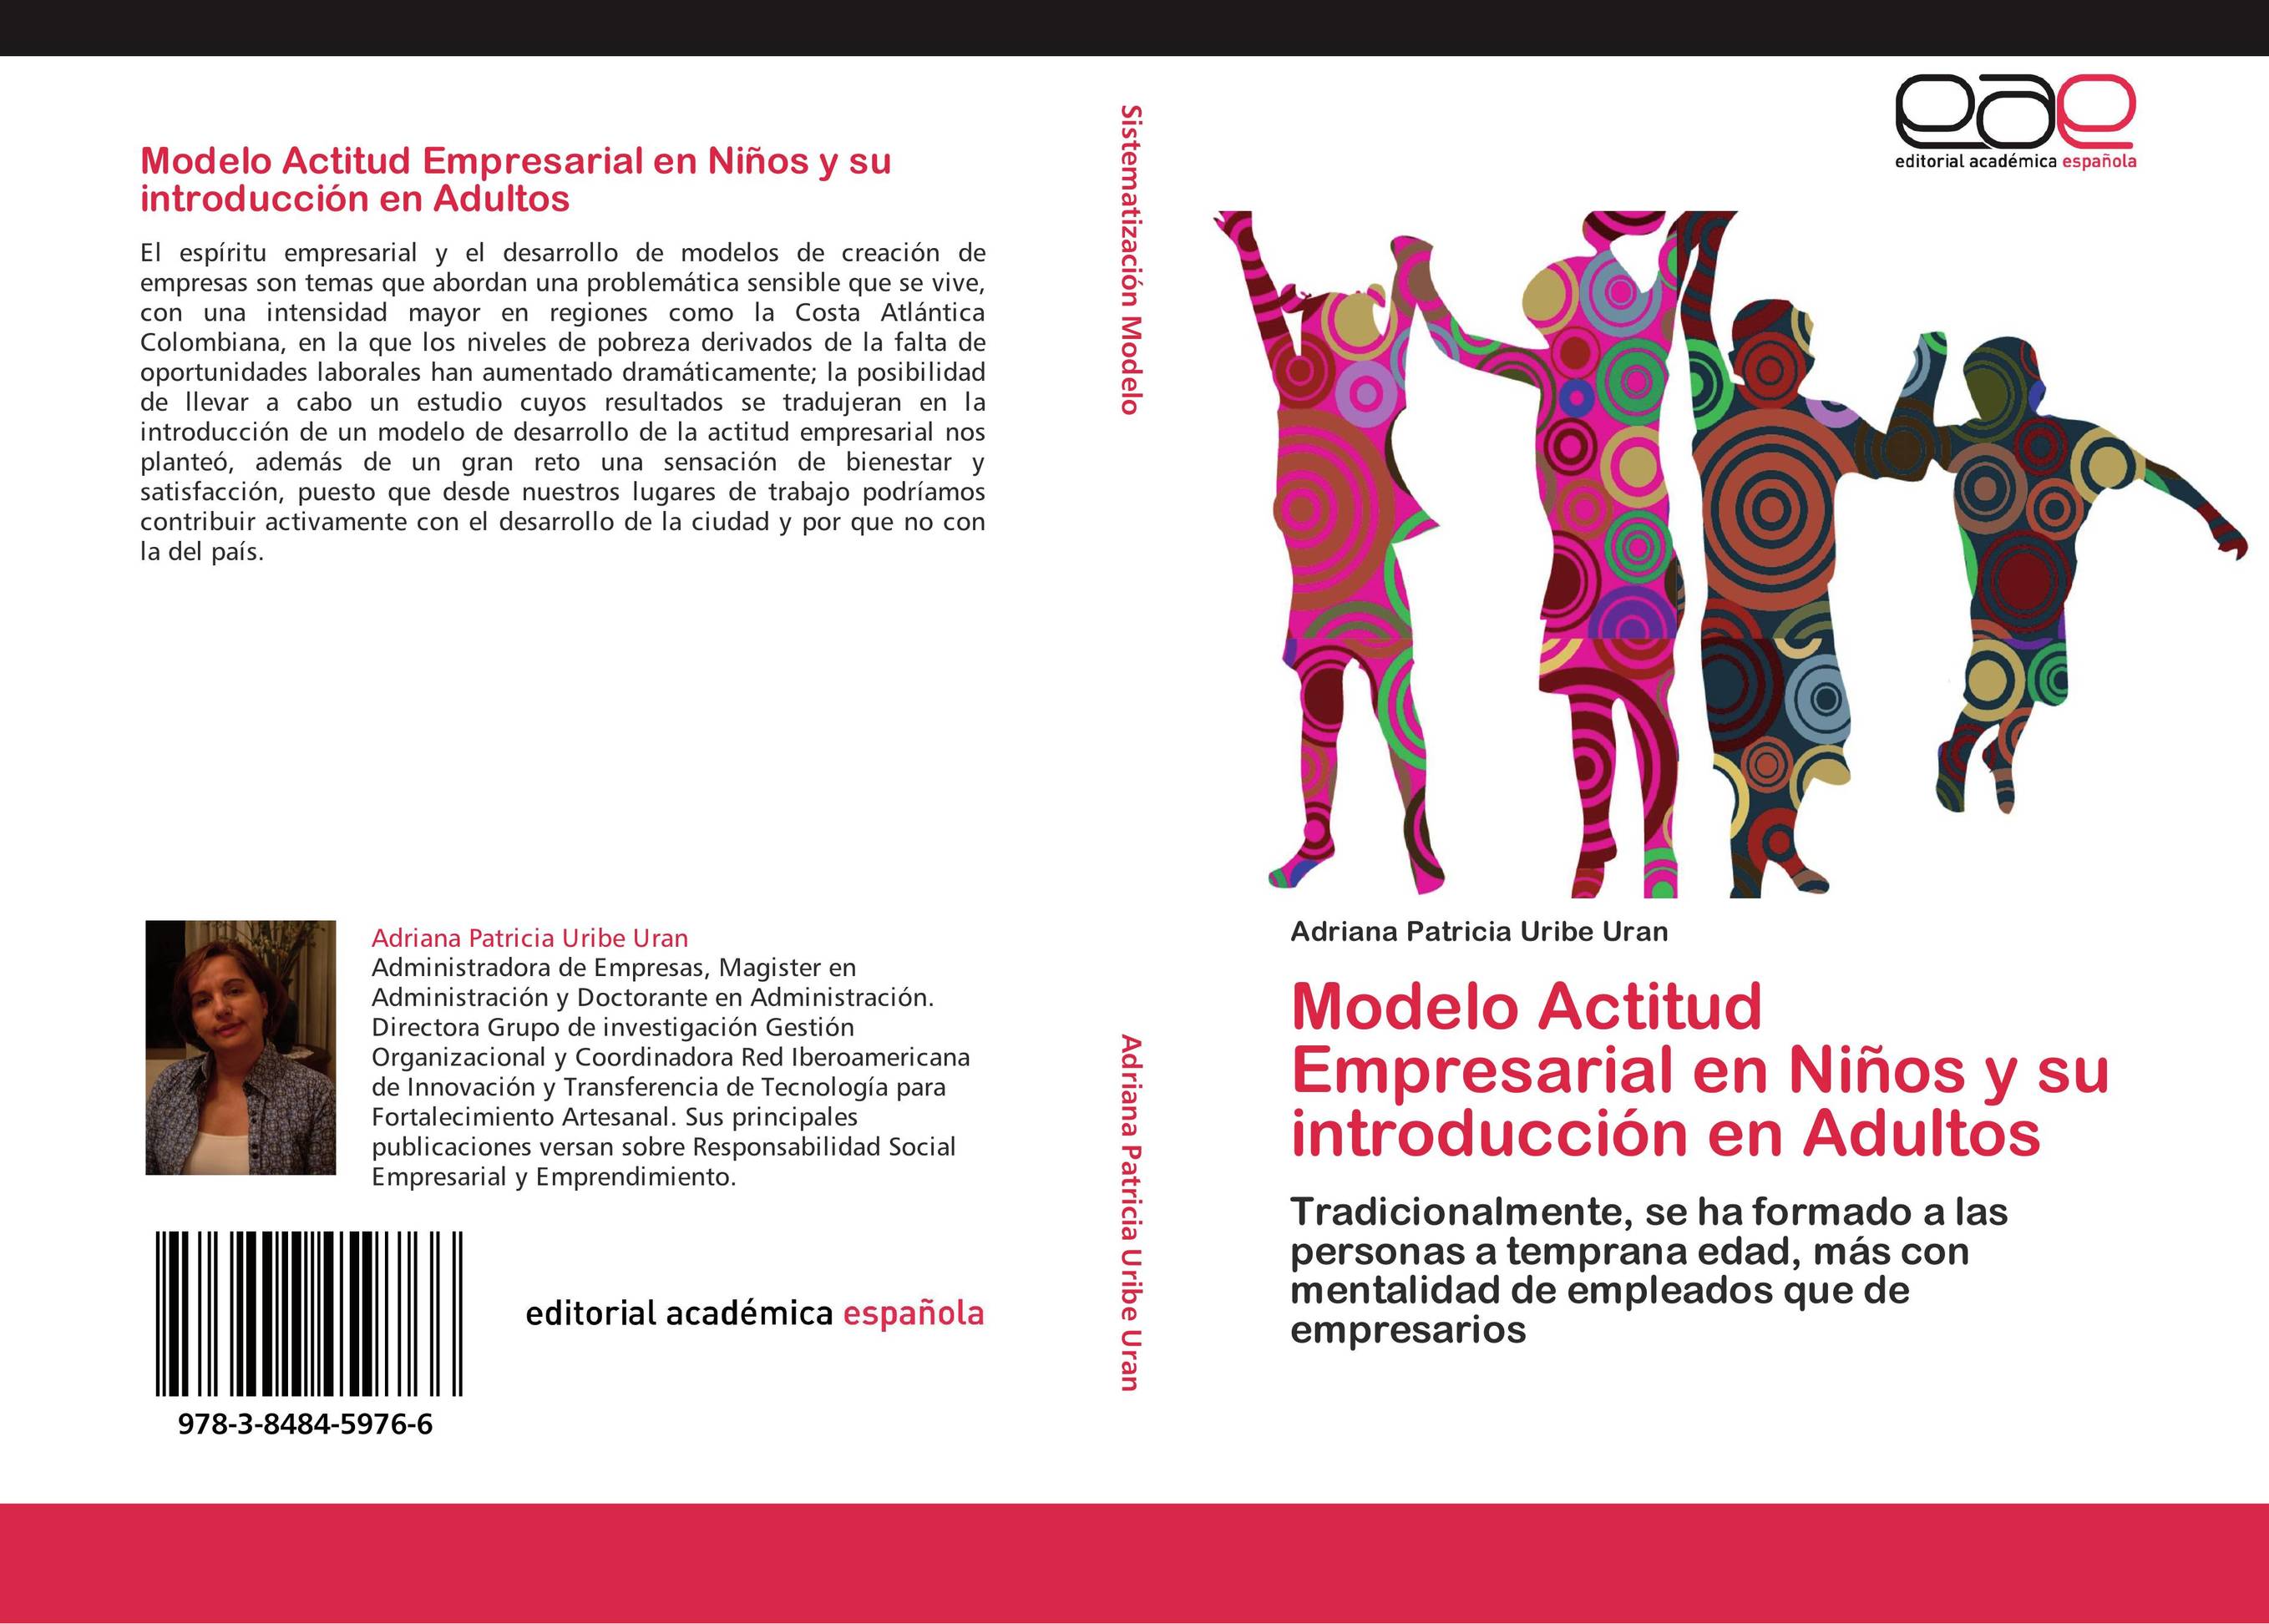 Modelo Actitud Empresarial en Niños y su introducción en Adultos